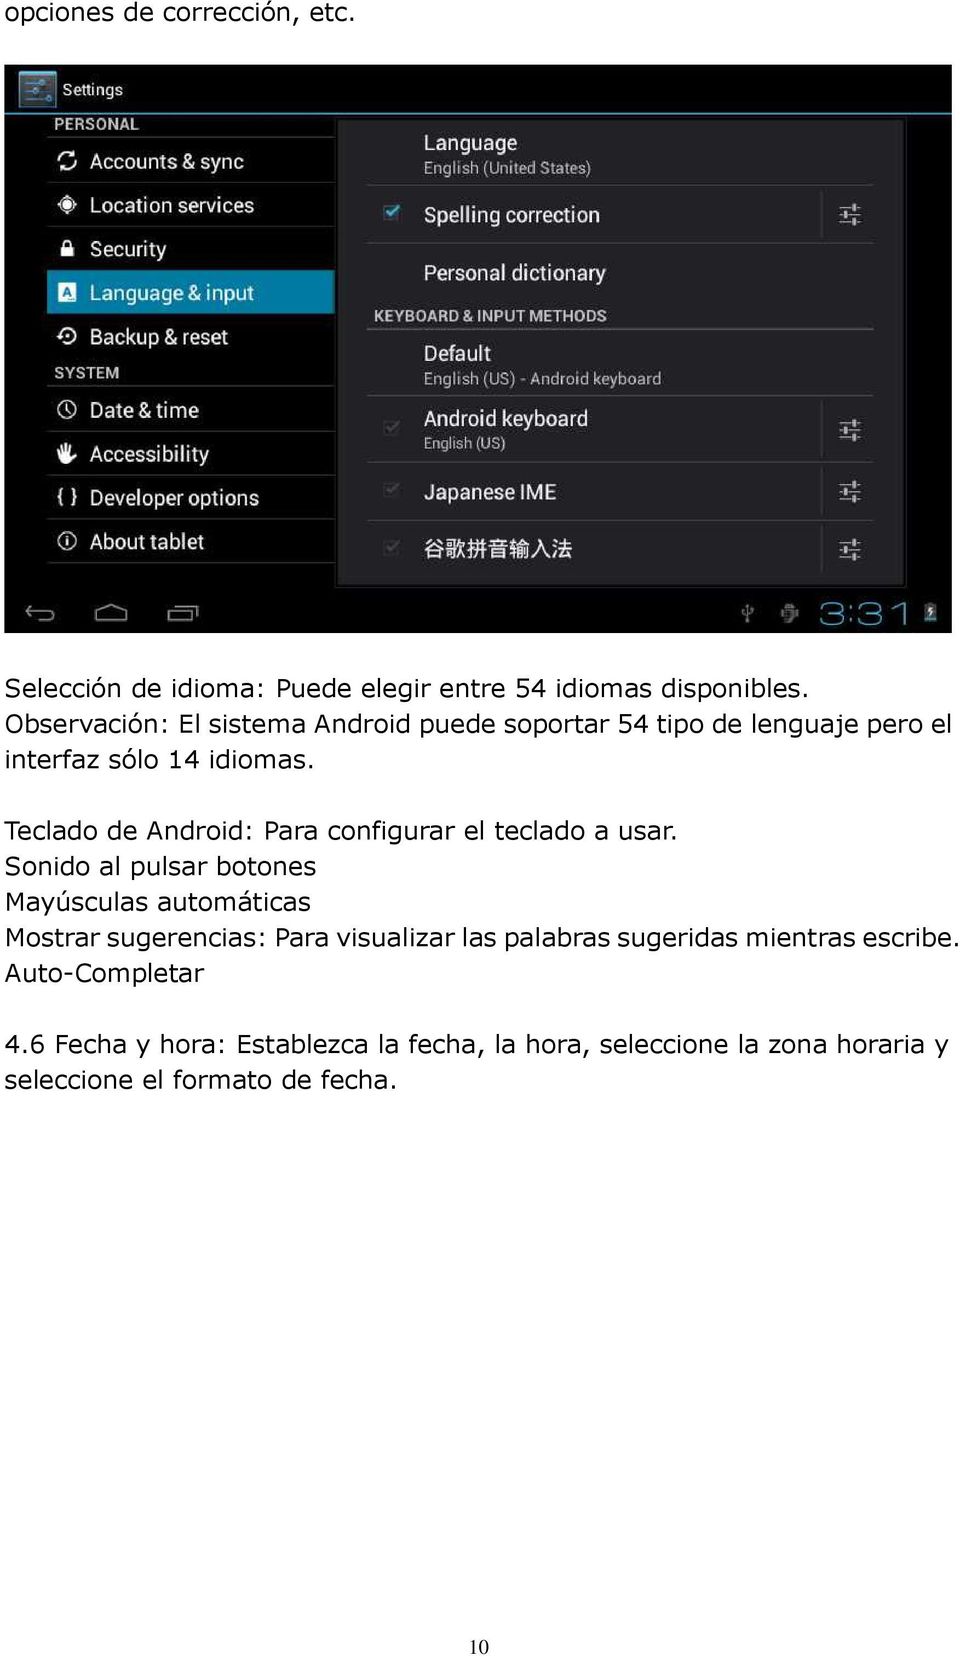 Teclado de Android: Para configurar el teclado a usar.